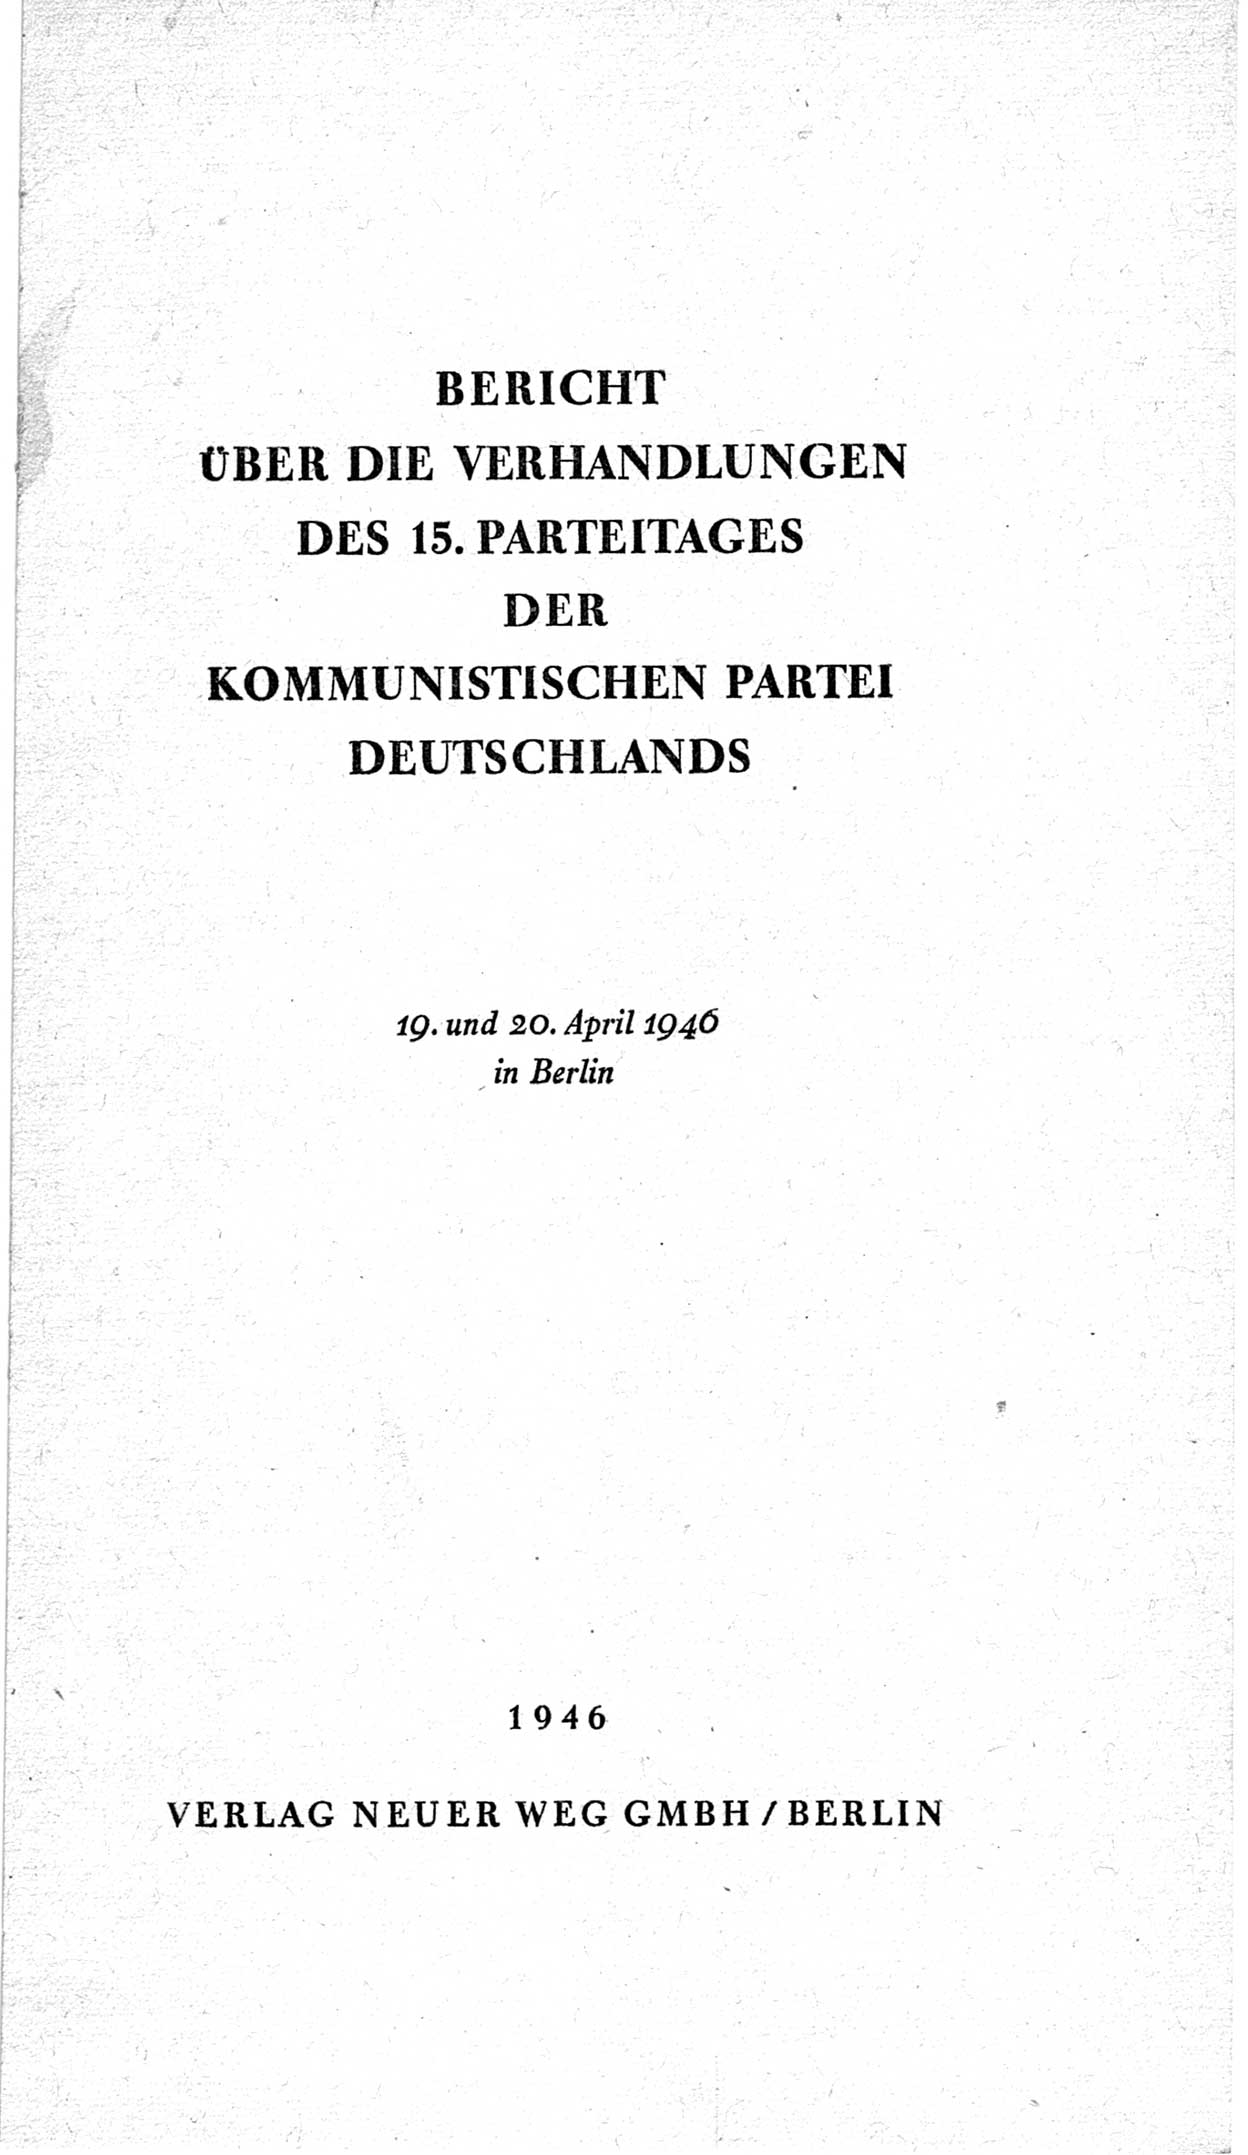 Bericht über die Verhandlungen des 15. Parteitages der Kommunistischen Partei Deutschlands (KPD) [Sowjetische Besatzungszone (SBZ) Deutschlands] am 19. und 20. April 1946 in Berlin, Seite 1 (Ber. Verh. 15. PT KPD SBZ Dtl. 1946, S. 1)